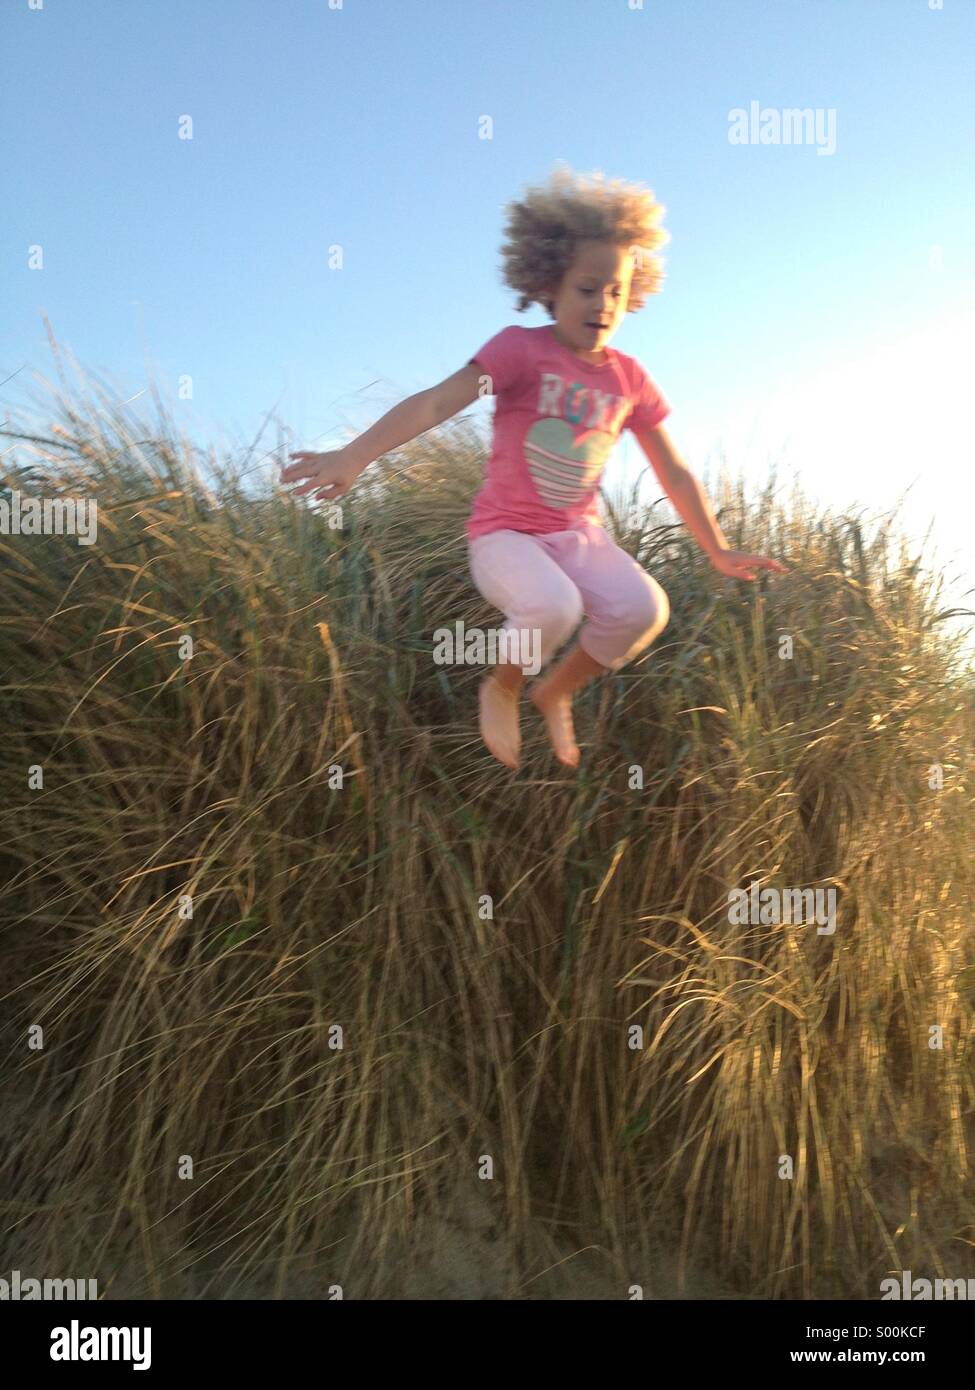 Abspringen Sanddüne, 7 - Jahre alten Maya Braibish springt Sanddüne am 4. Juli. Manzanita, Oregon Küste Stockfoto